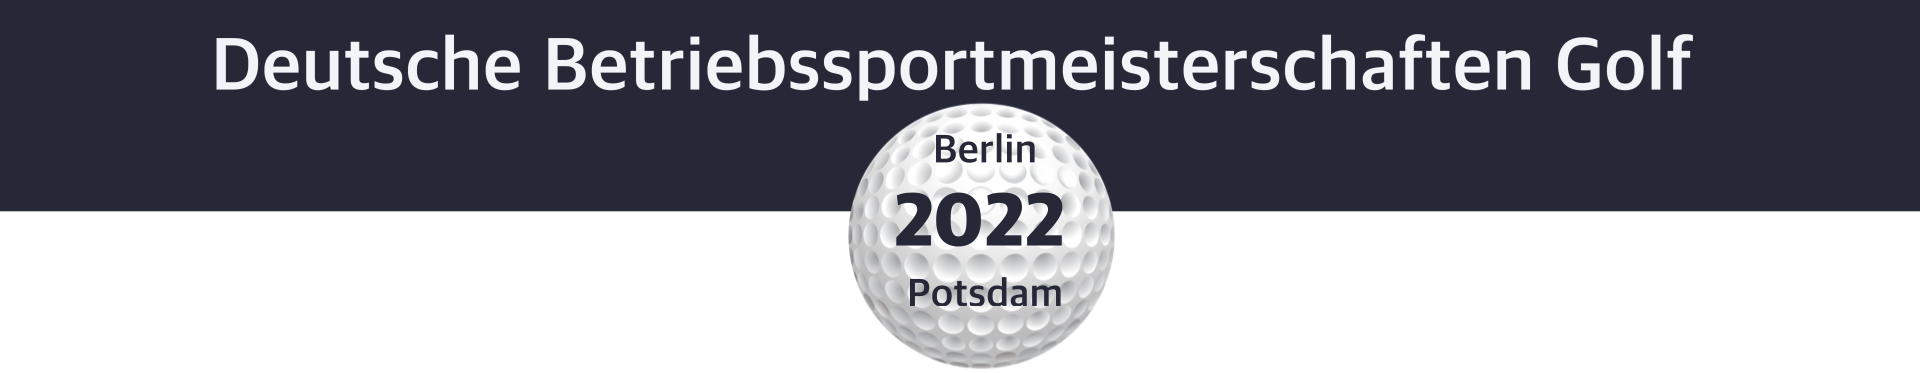 DBM Golf 2022 Berlin/Potsdam